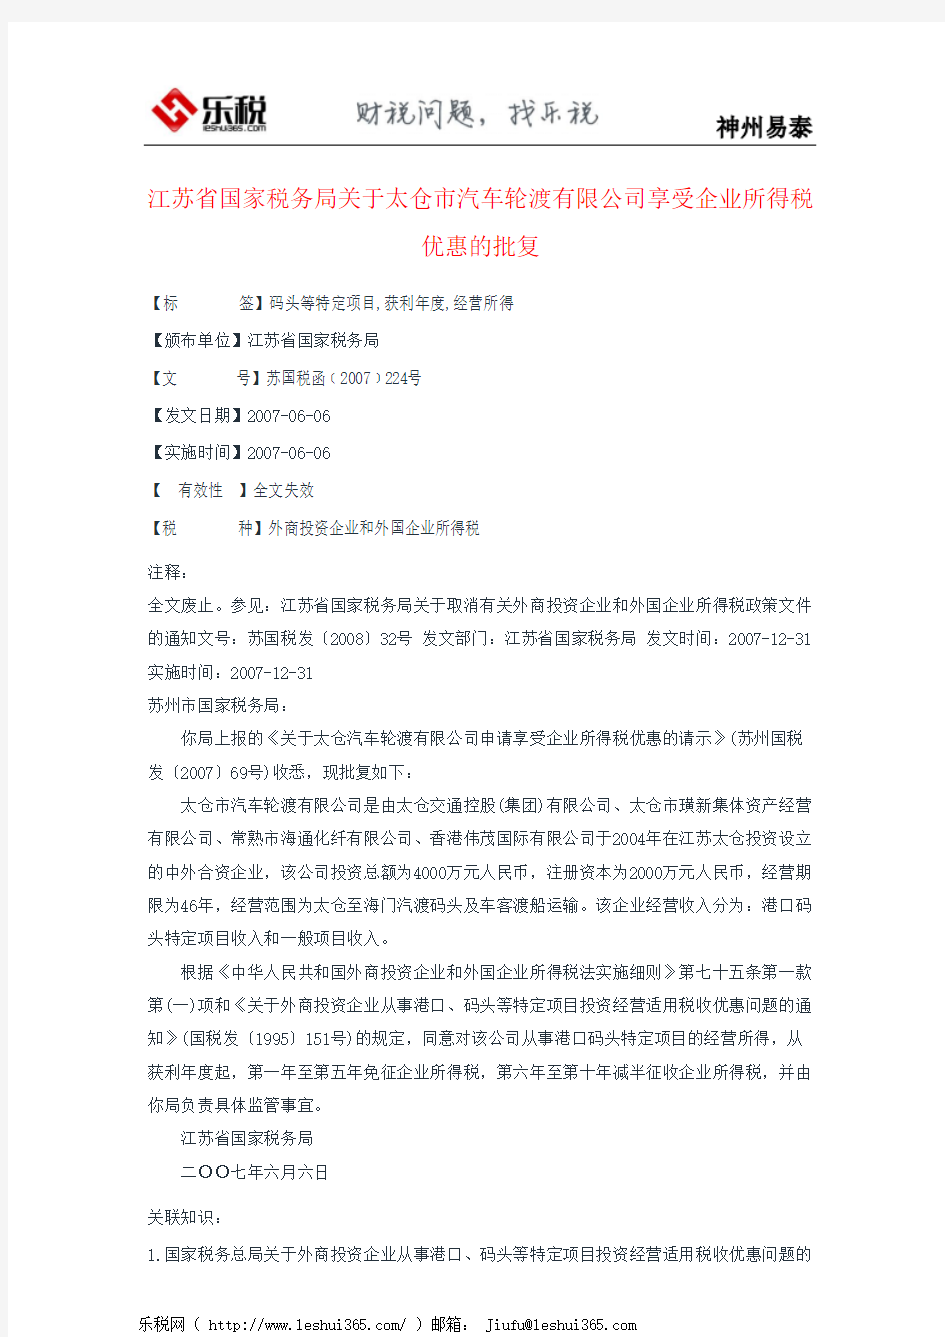 江苏省国家税务局关于太仓市汽车轮渡有限公司享受企业所得税优惠的批复